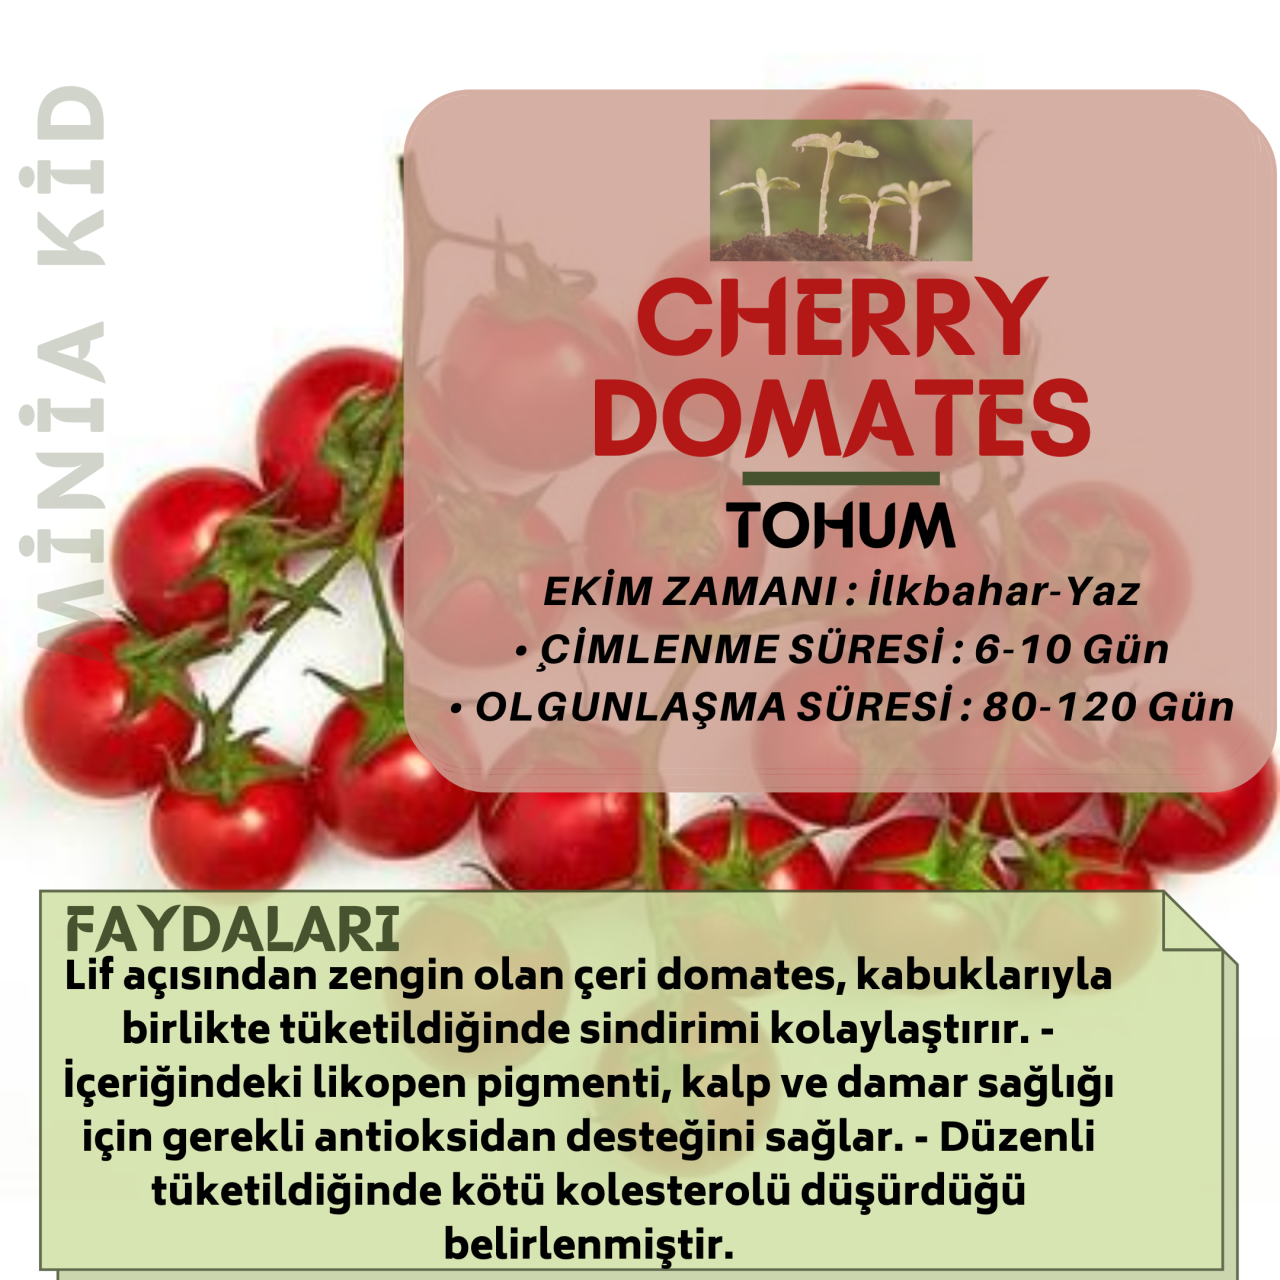 Cherry Domates Faydaları